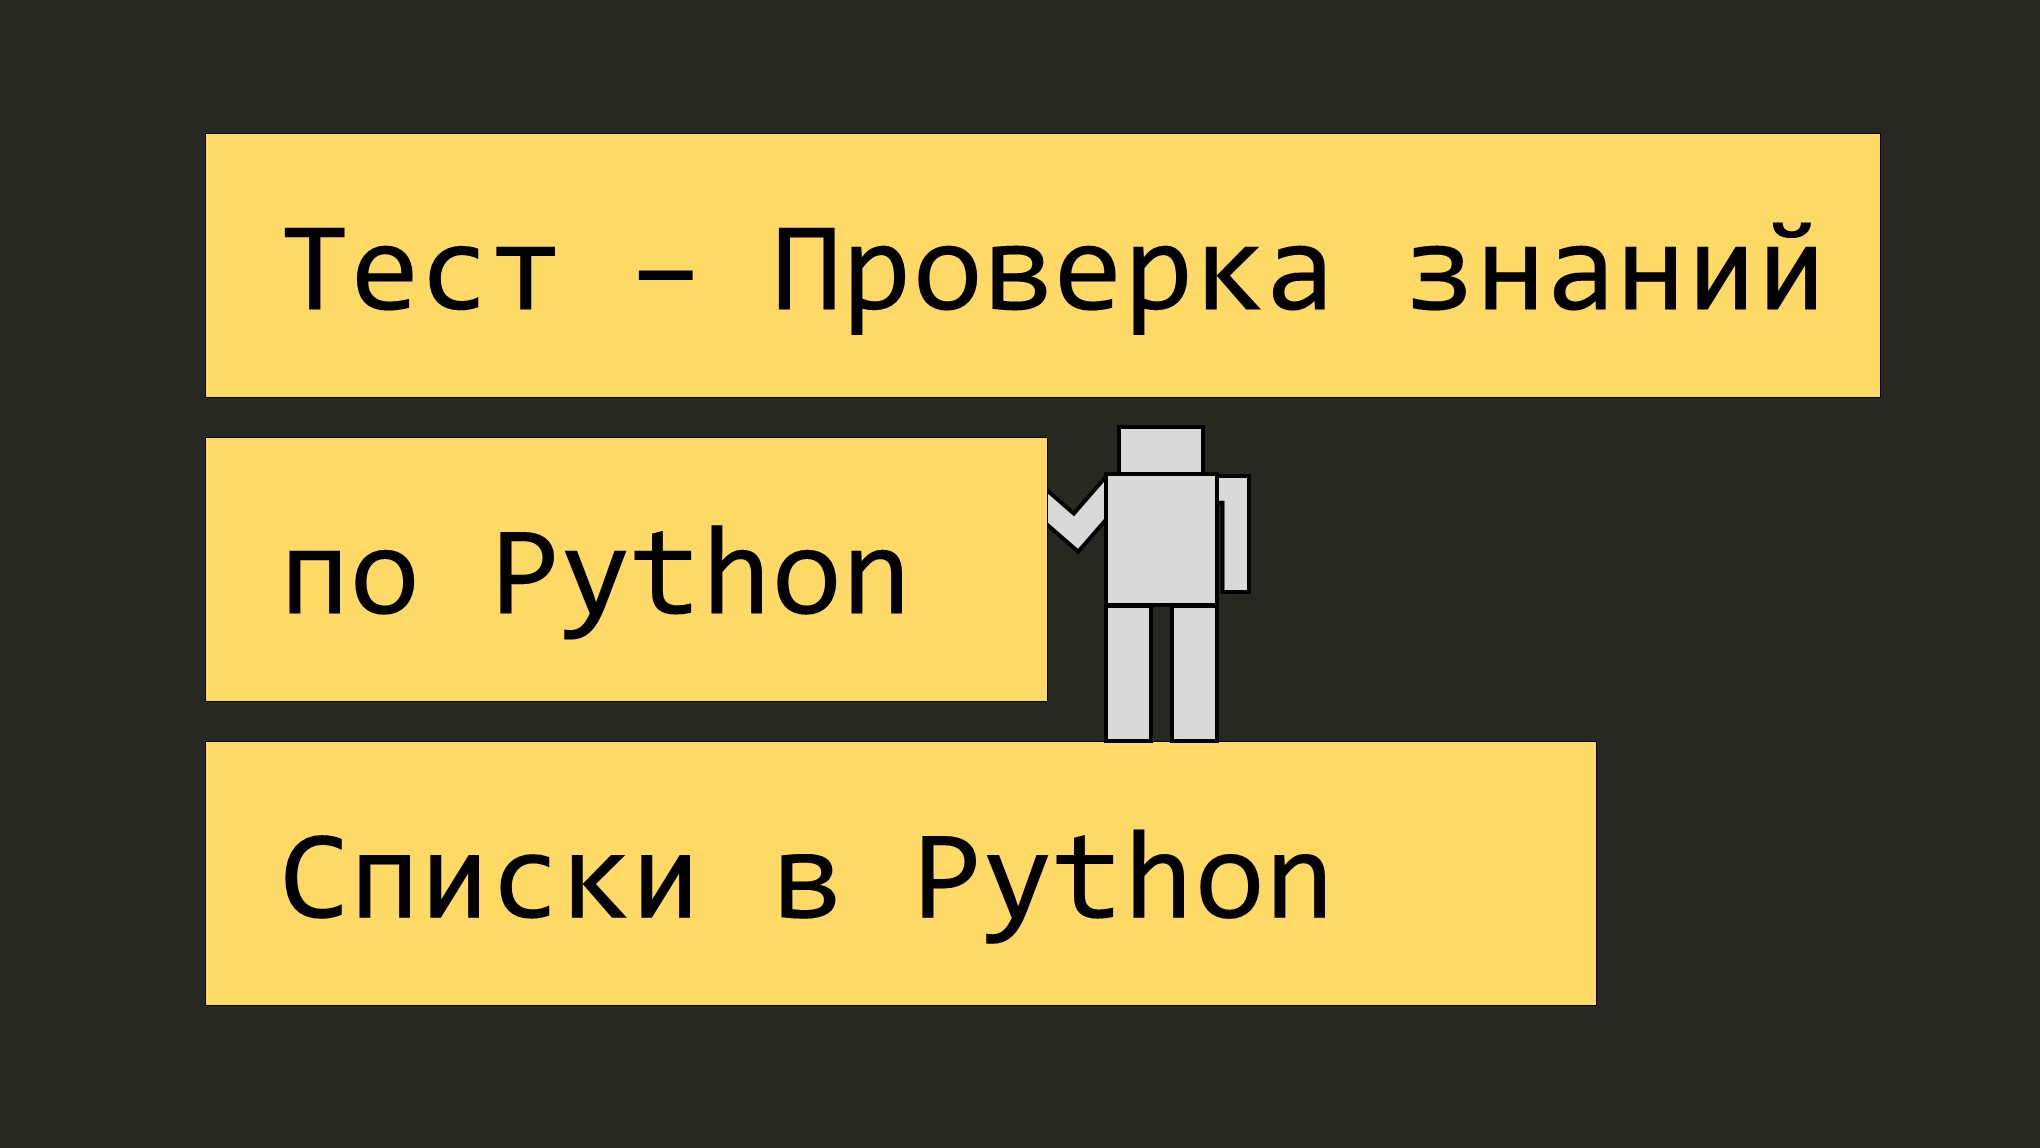 Тест 1 python. Тест по питону. Питон программирование для начинающих. Тестирование питон. Задания по Python для начинающих.